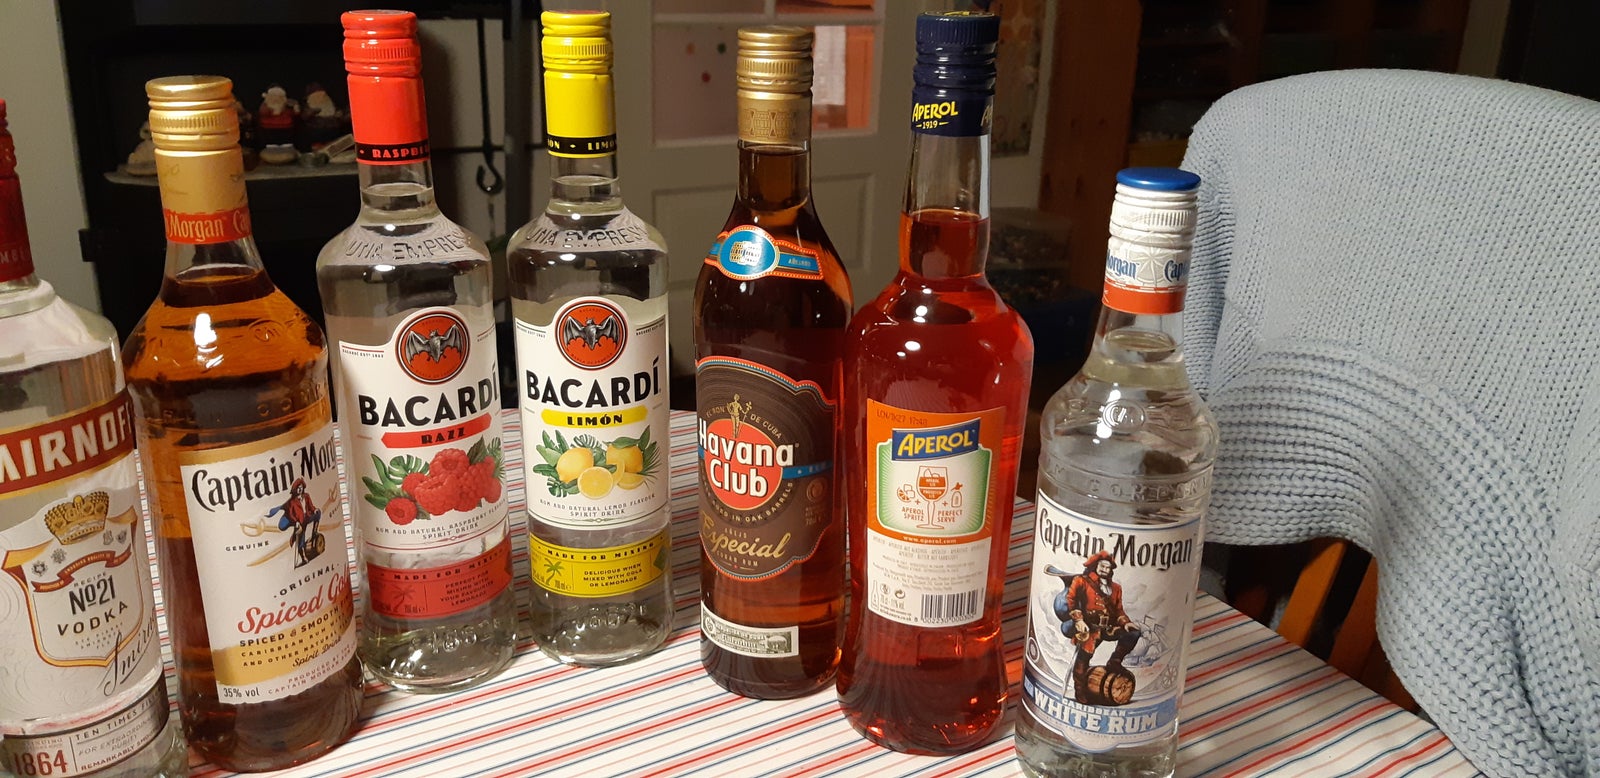 Vin og spiritus, Rum, Vodka